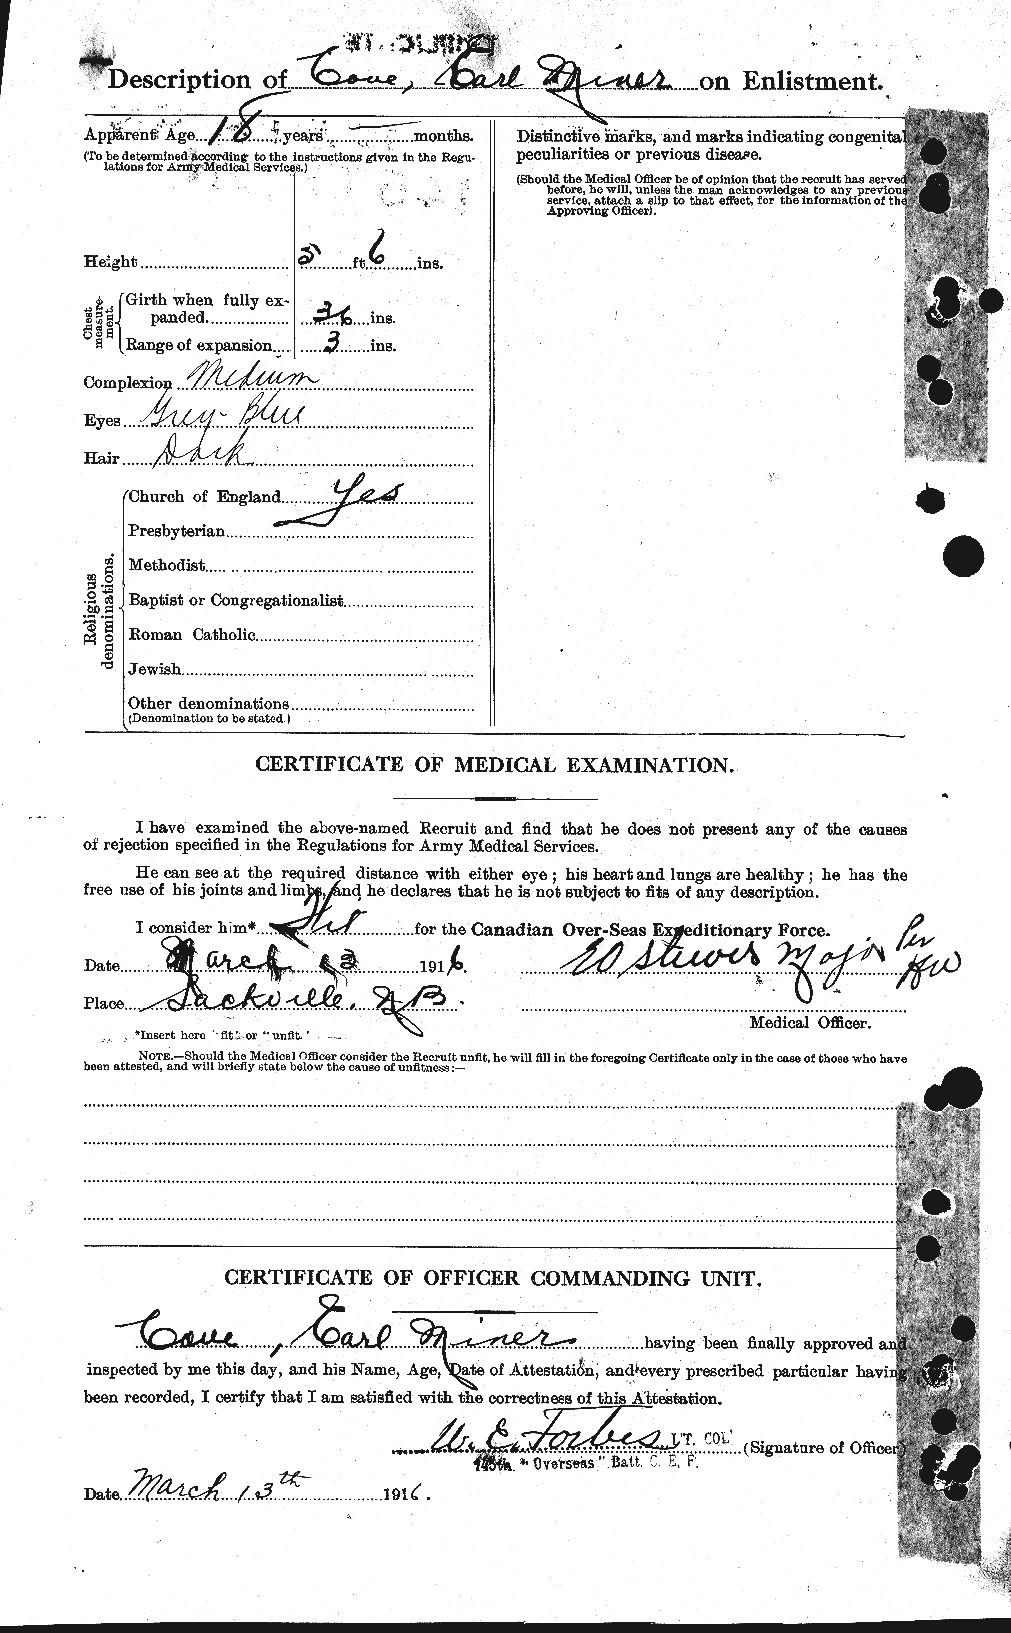 Dossiers du Personnel de la Première Guerre mondiale - CEC 059673b